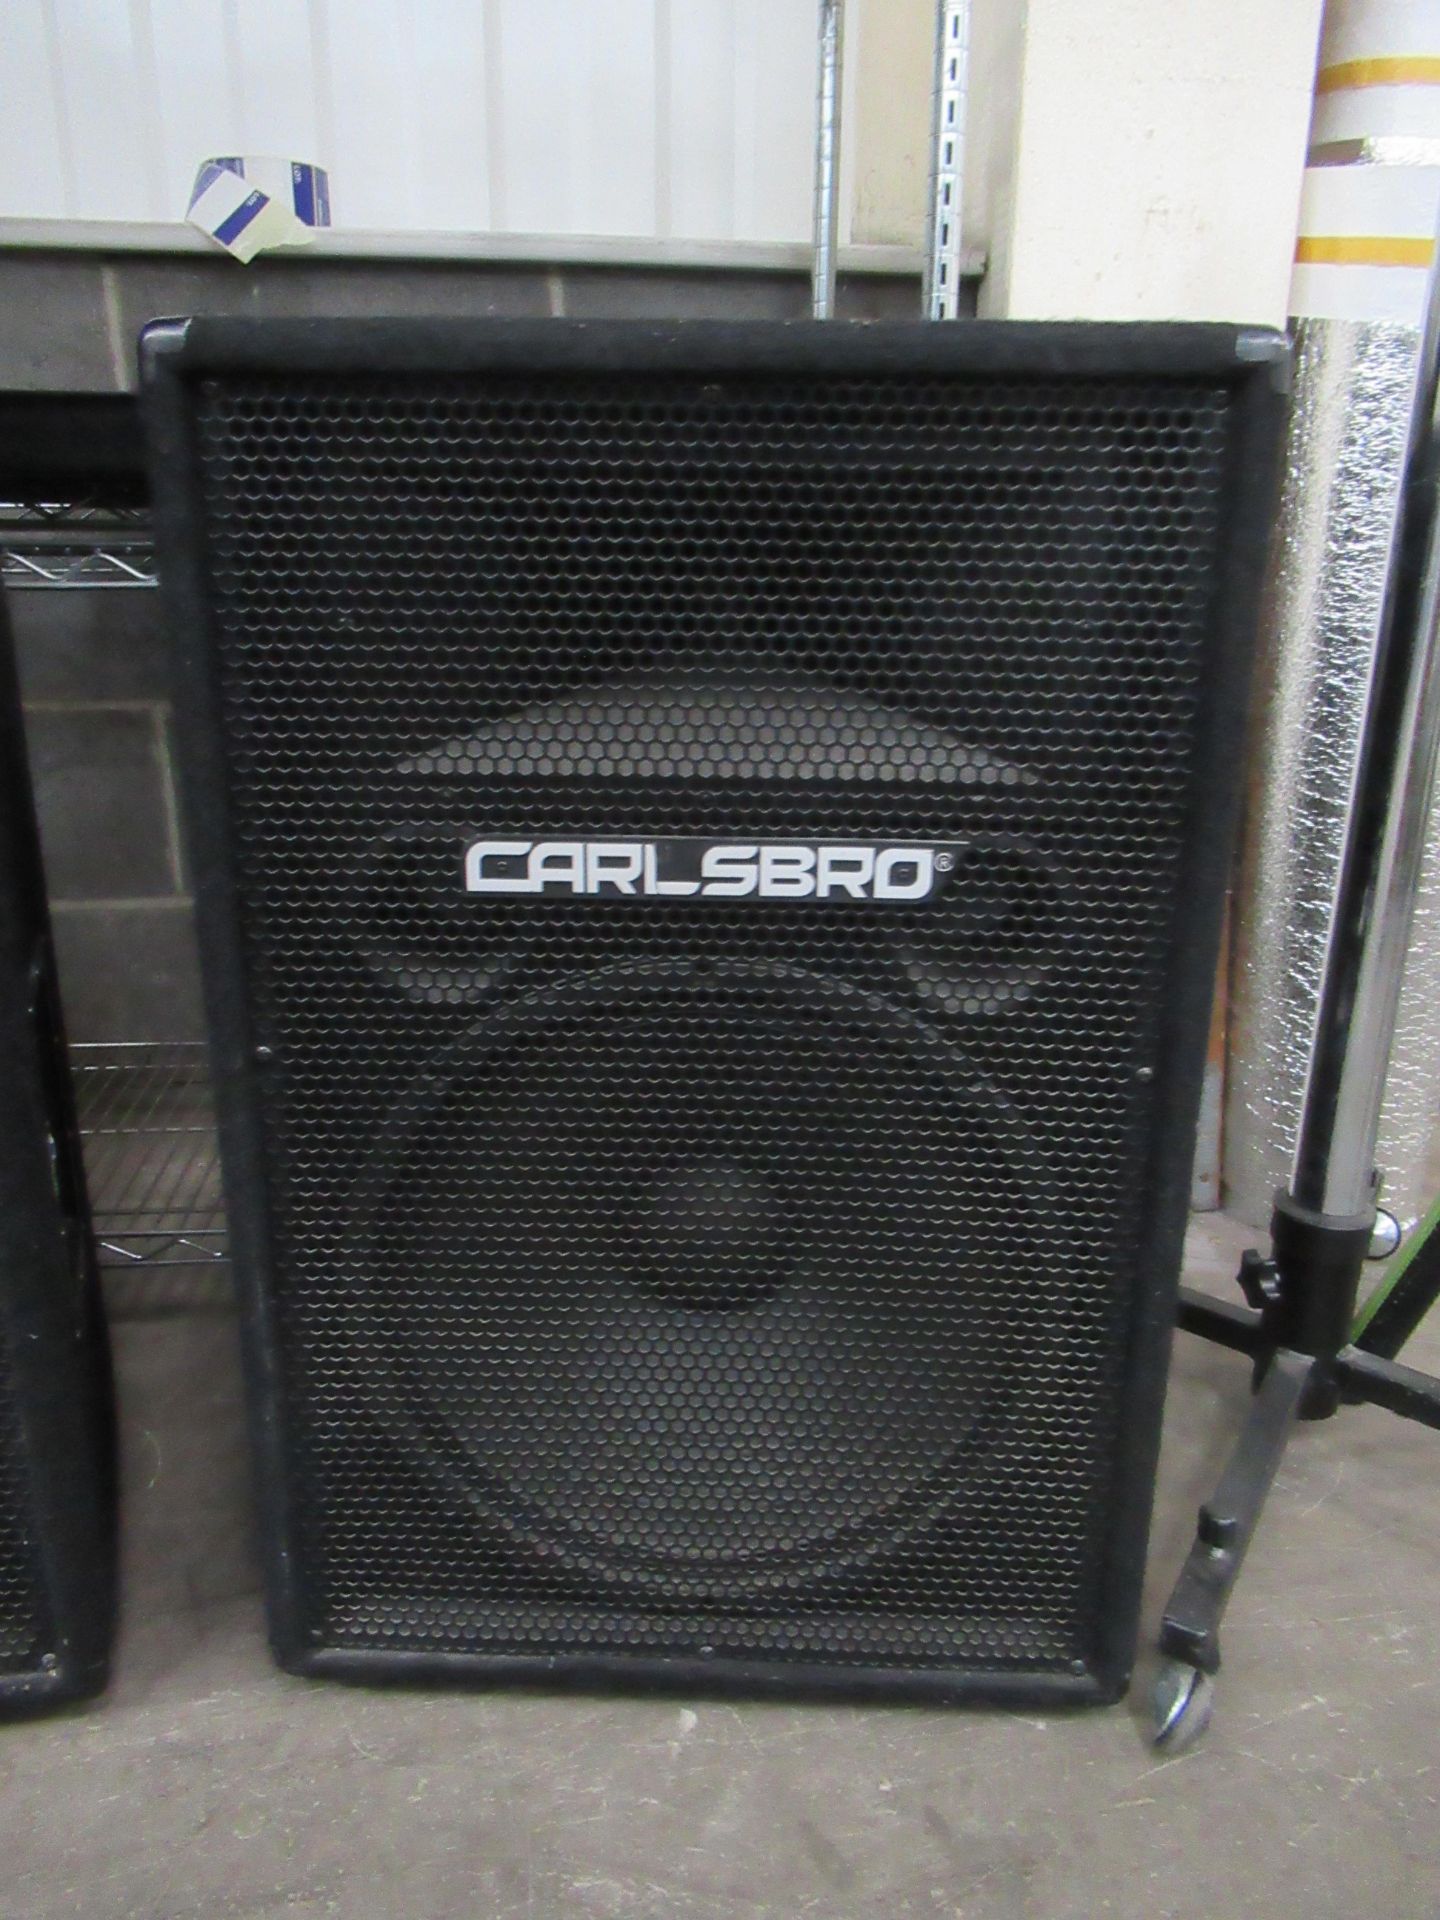 2x Carlsbro Speakers - no model numbers - Image 3 of 7